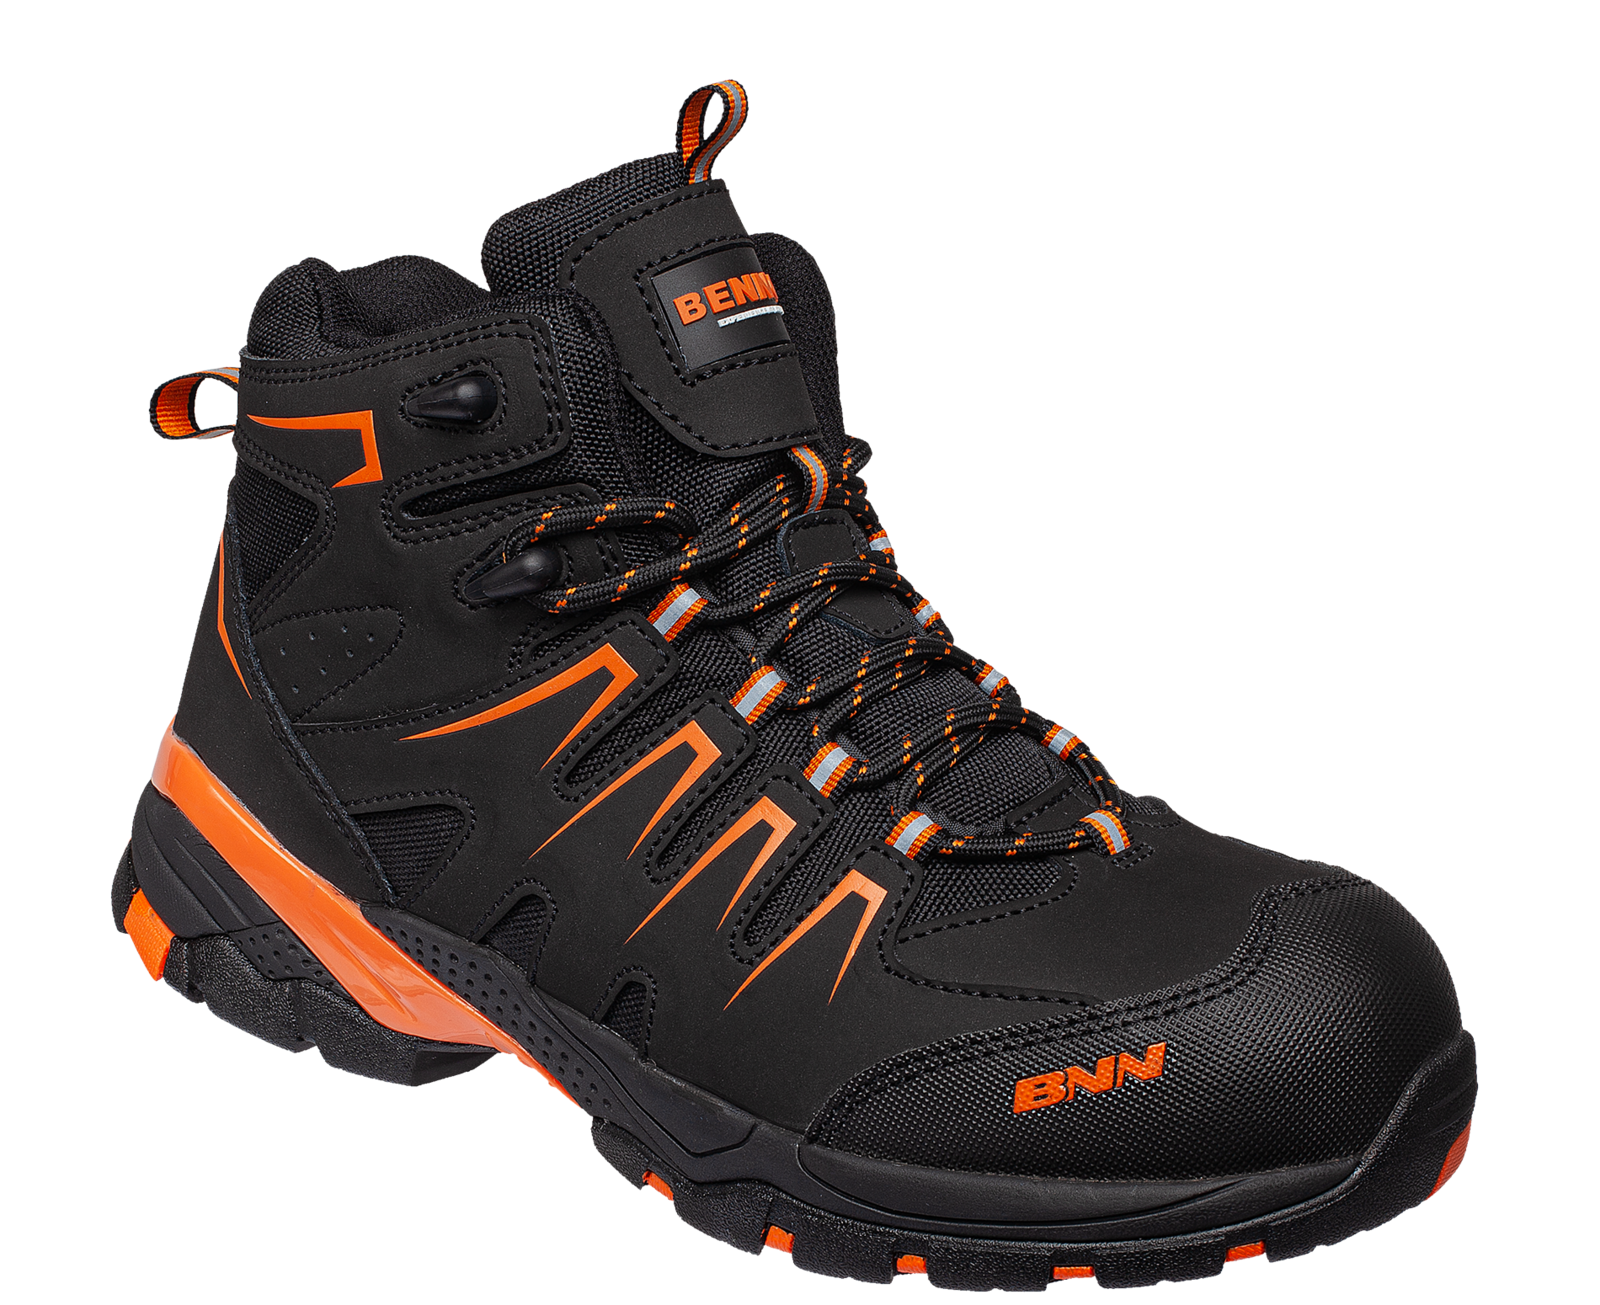 Bezpečnostná členková obuv Bennon Orlando XTR S3 NM High - veľkosť: 43, farba: čierna/oranžová